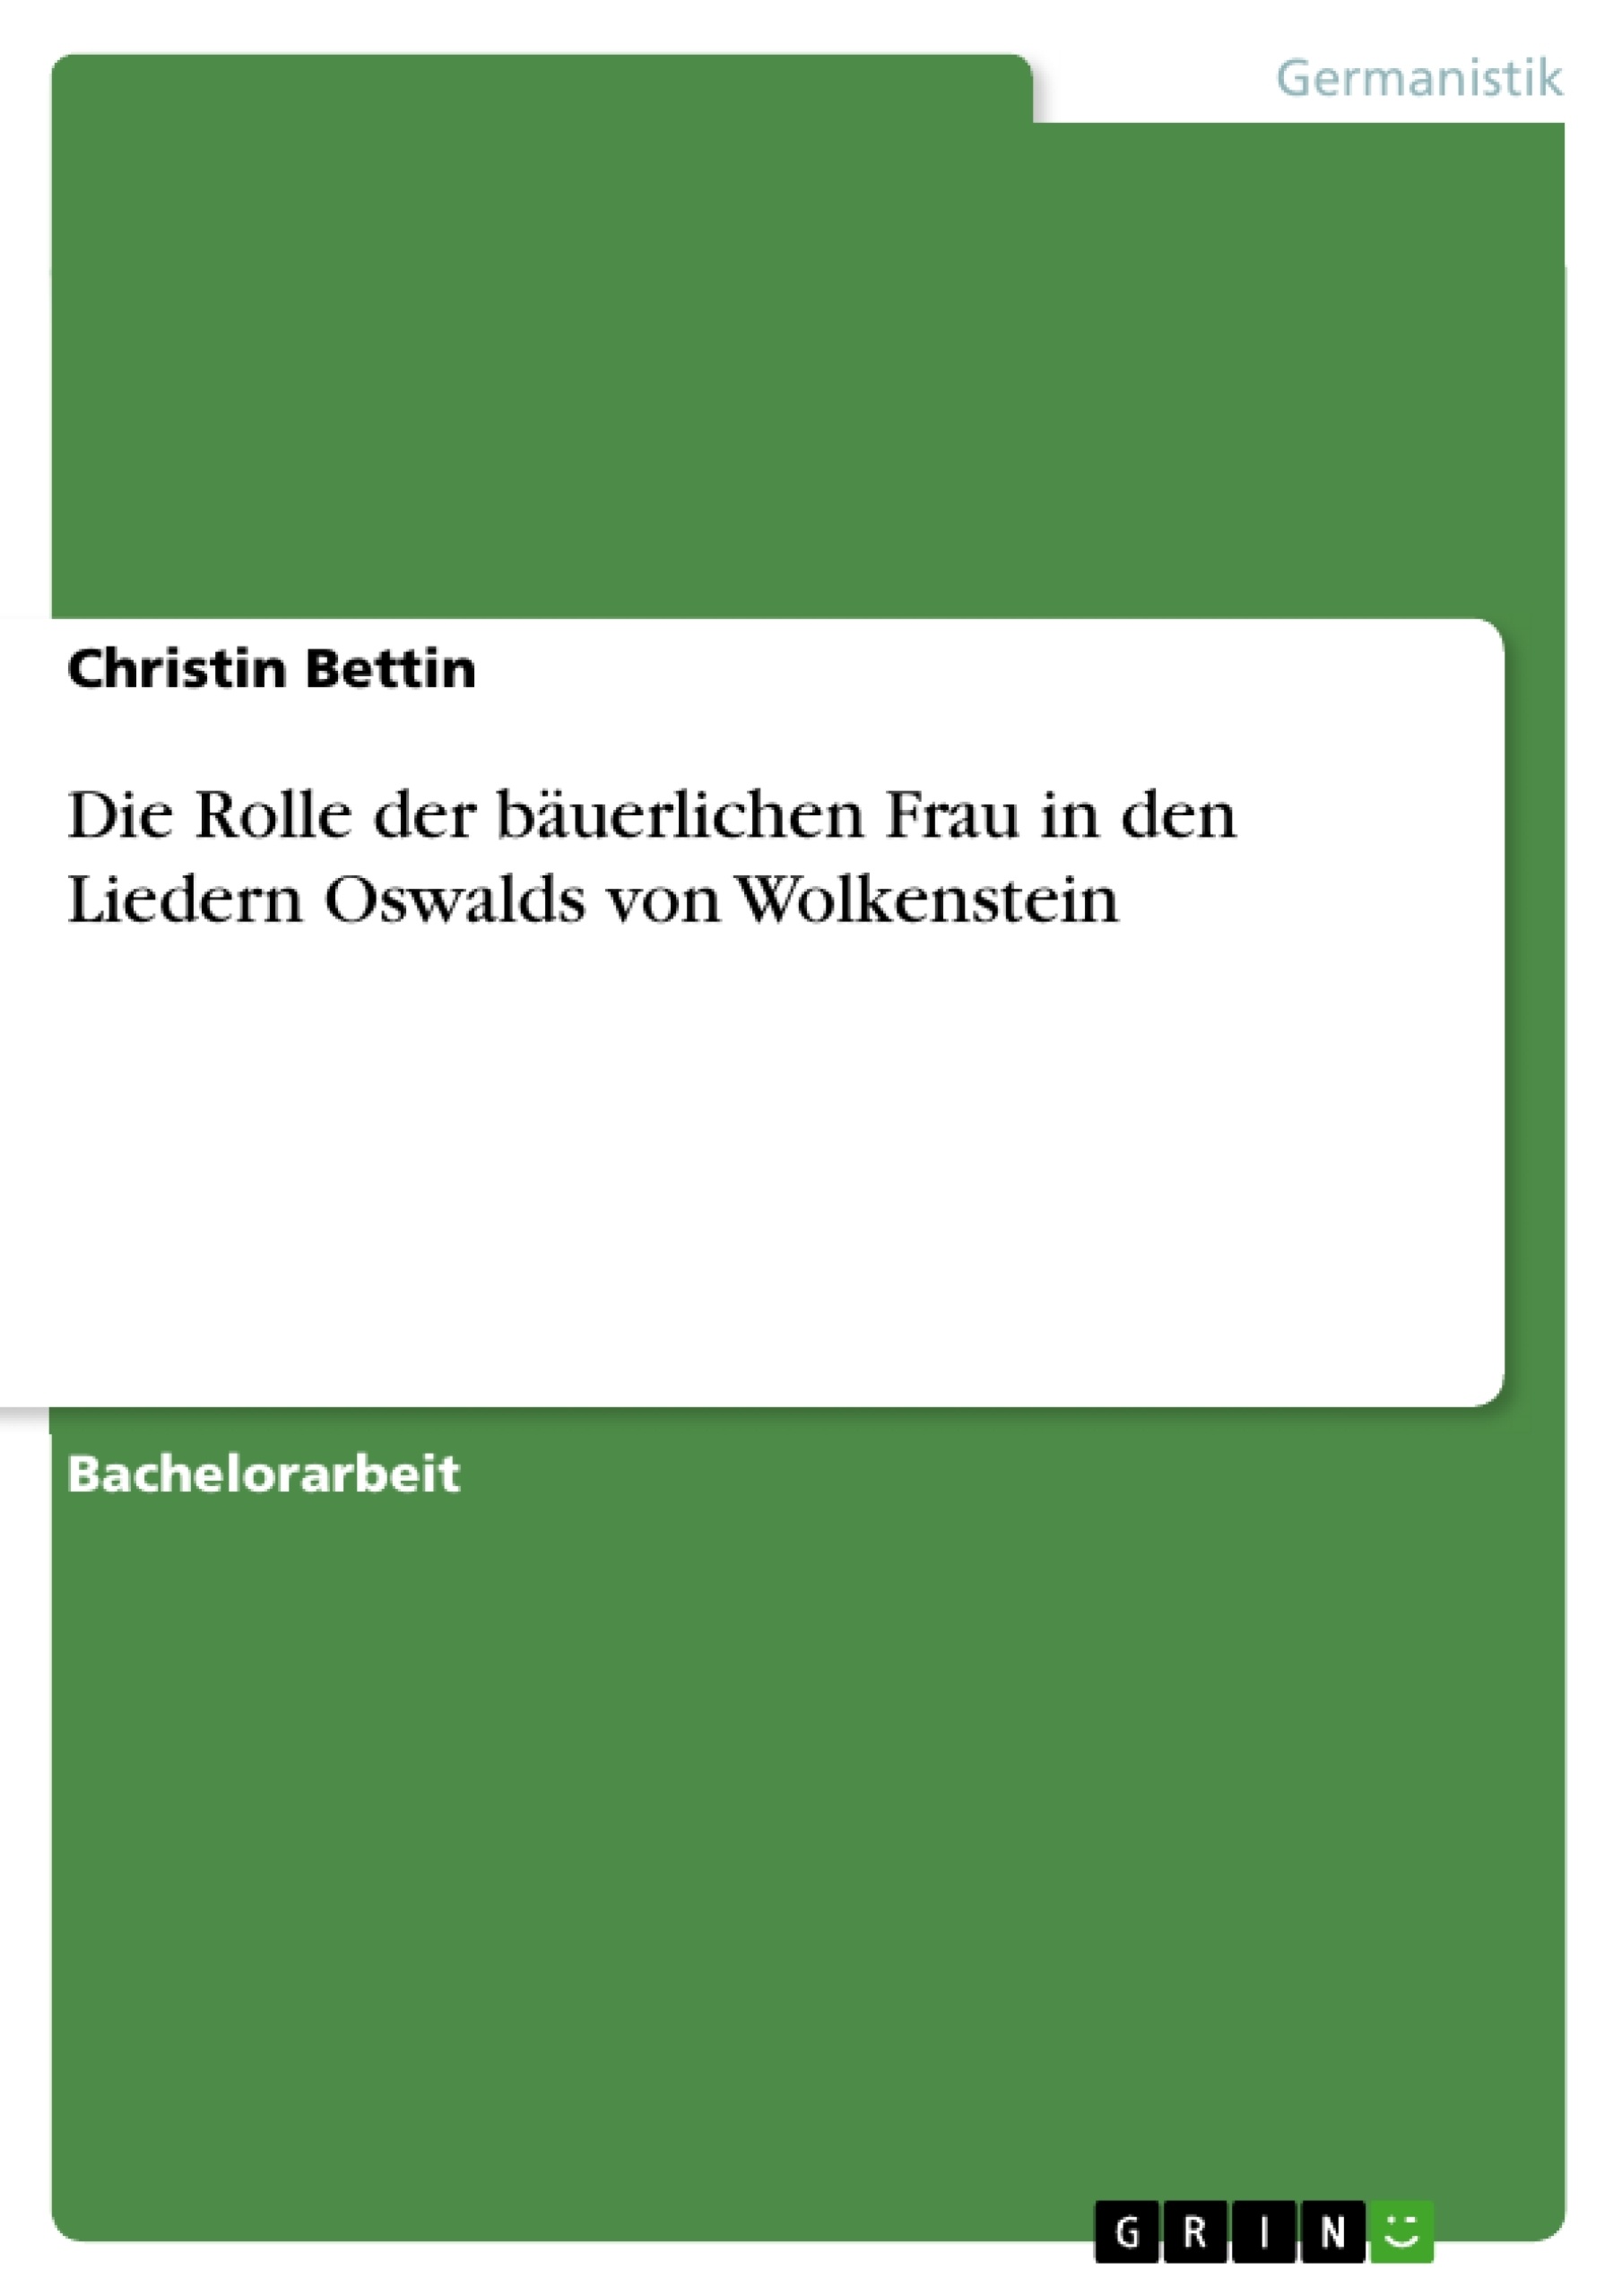 Title: Die Rolle der bäuerlichen Frau in den Liedern Oswalds von Wolkenstein